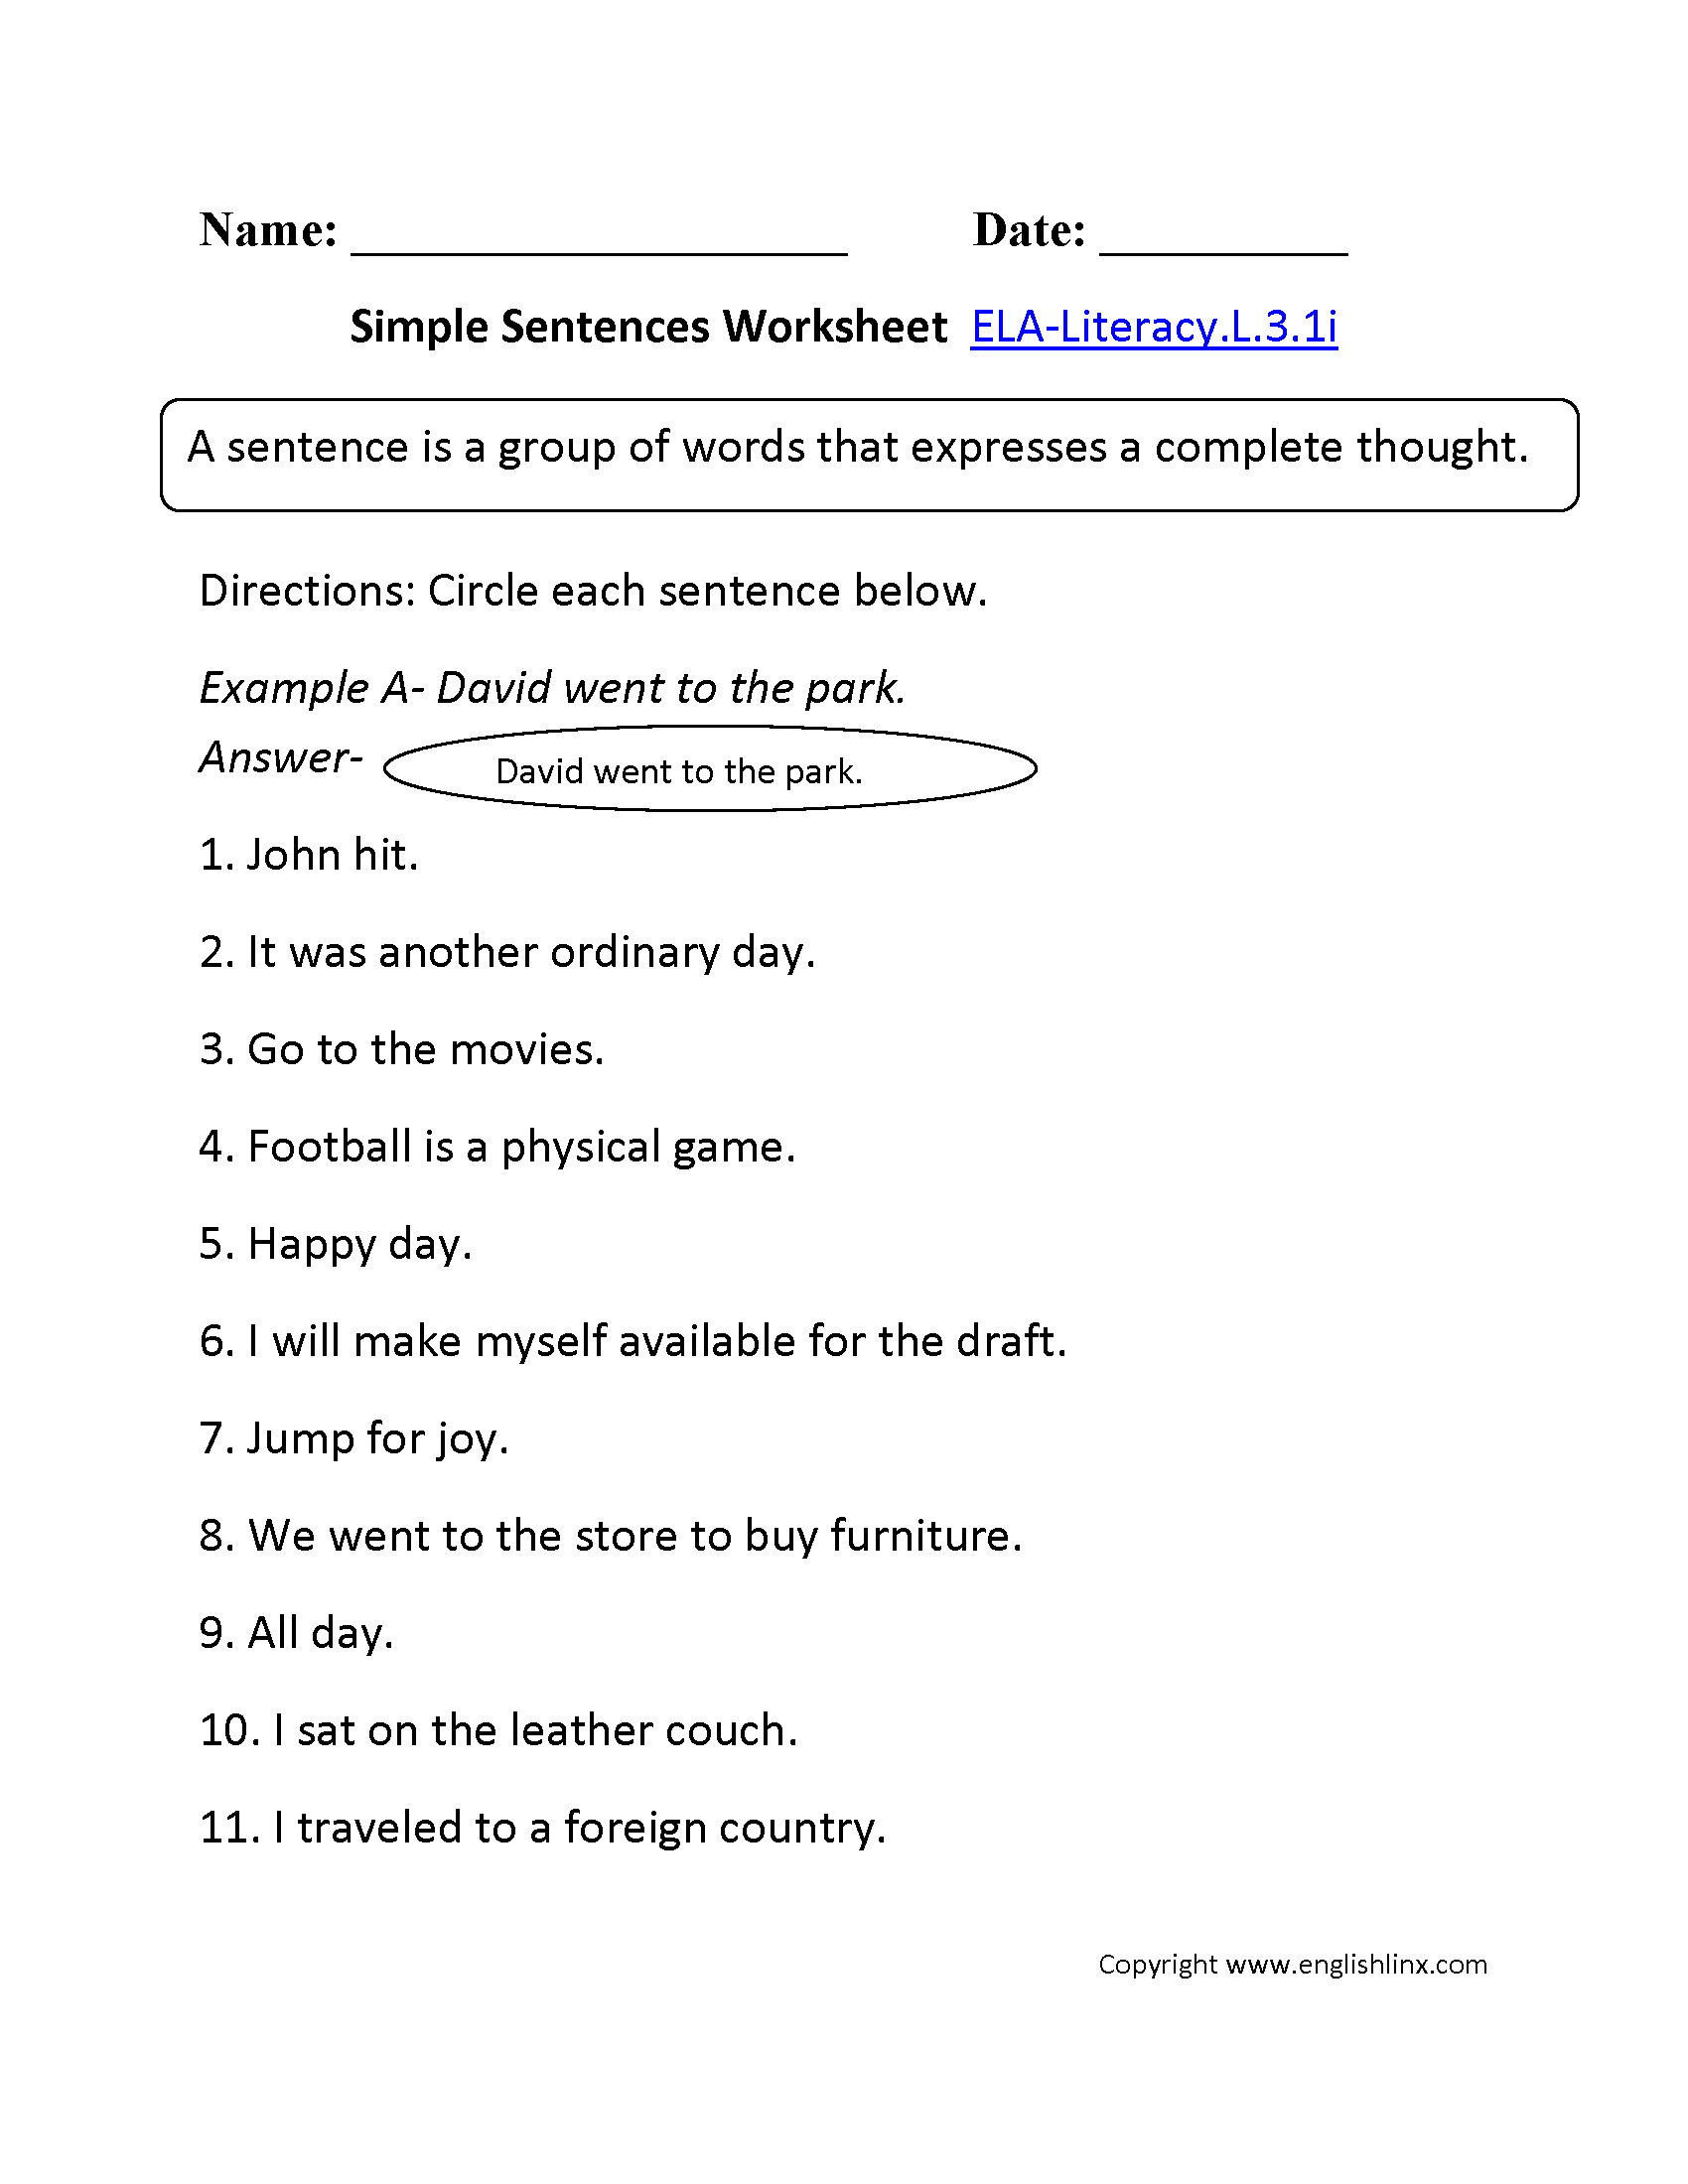 Class 3 Sentence Worksheet